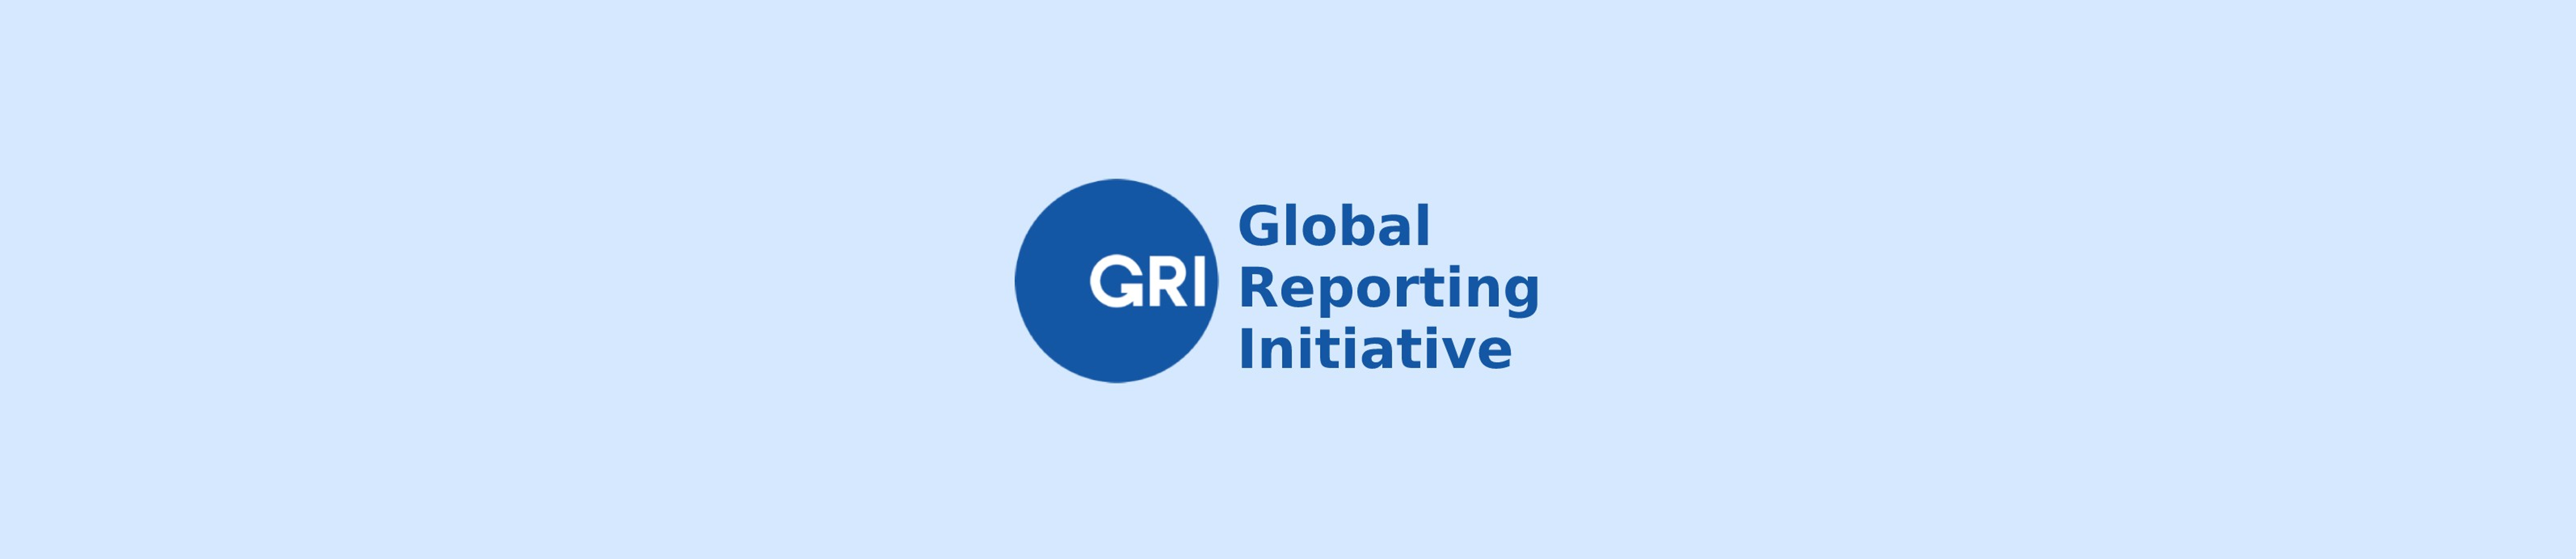 Relatório GRI: O que é, como funciona e como usar na prática